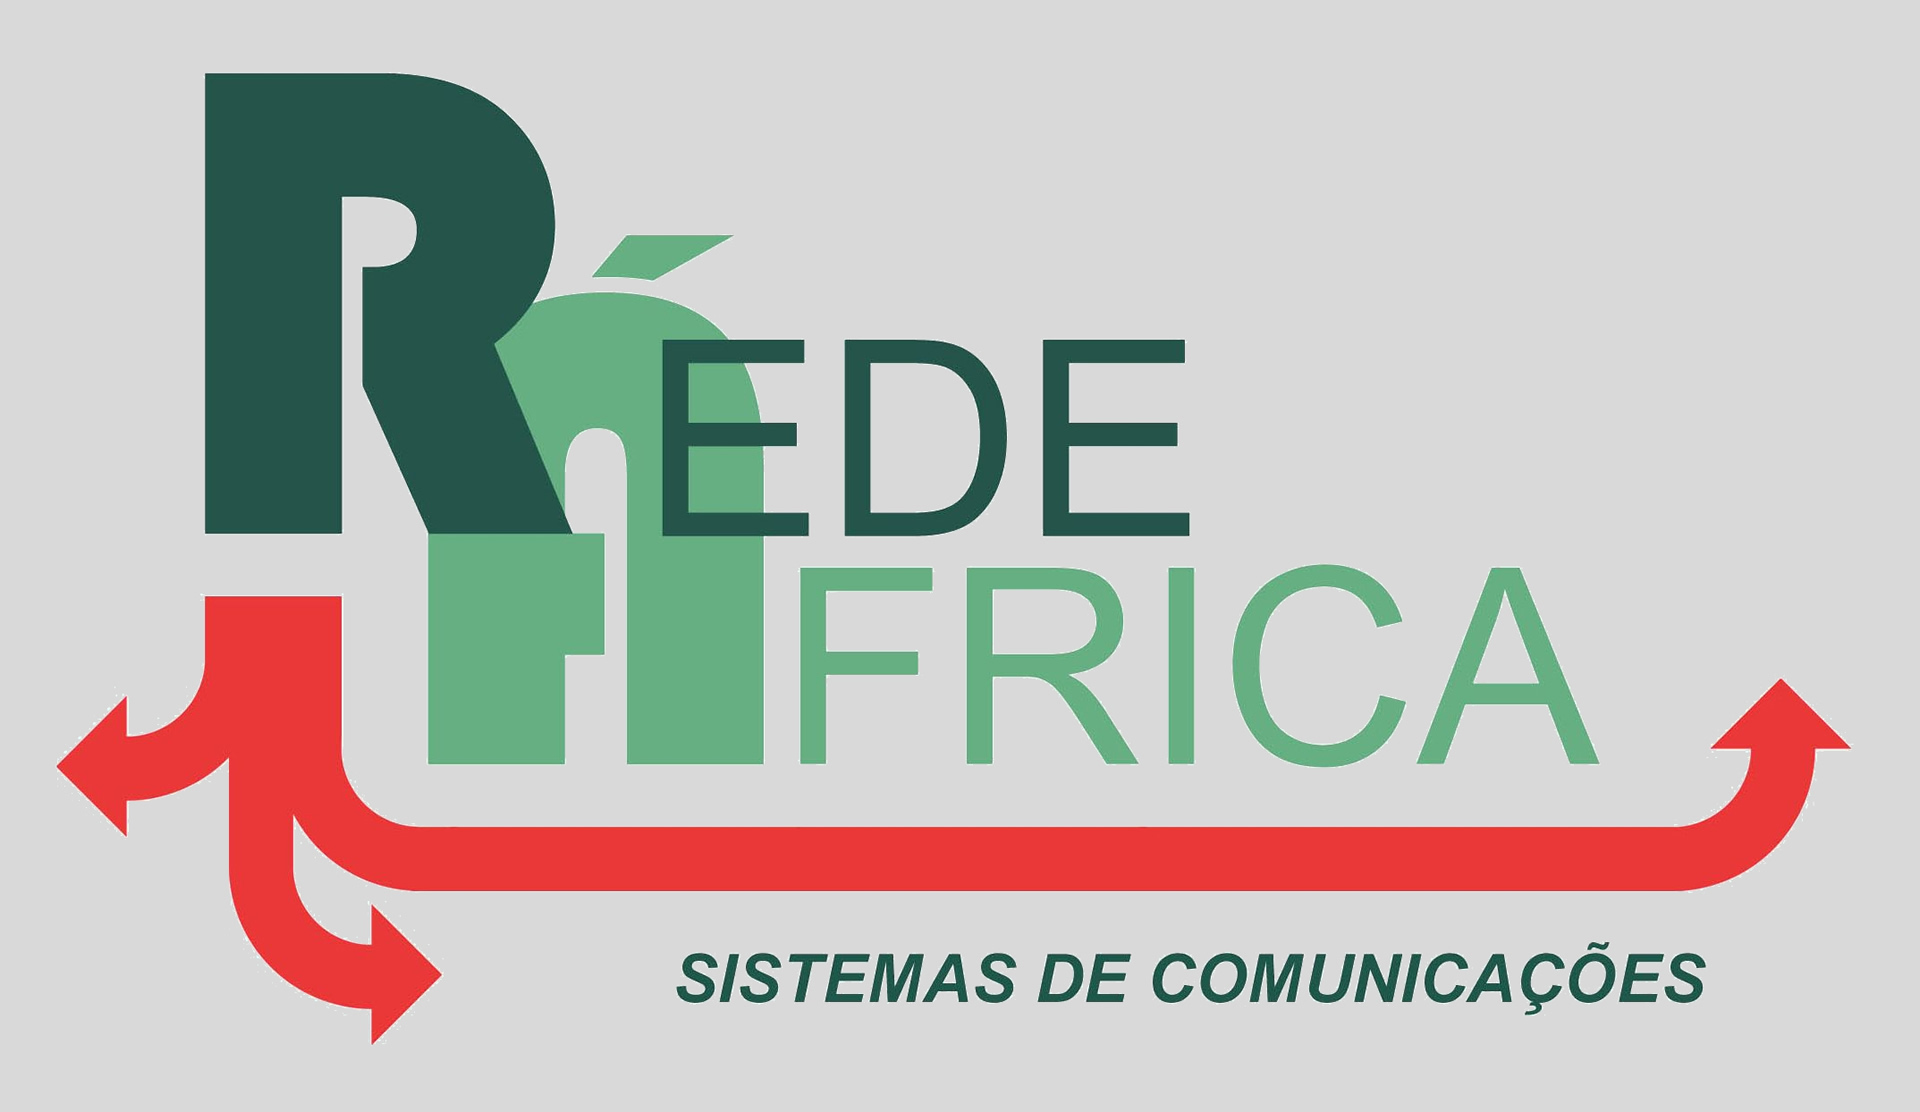 Rede África - Sistemas de Comunicações